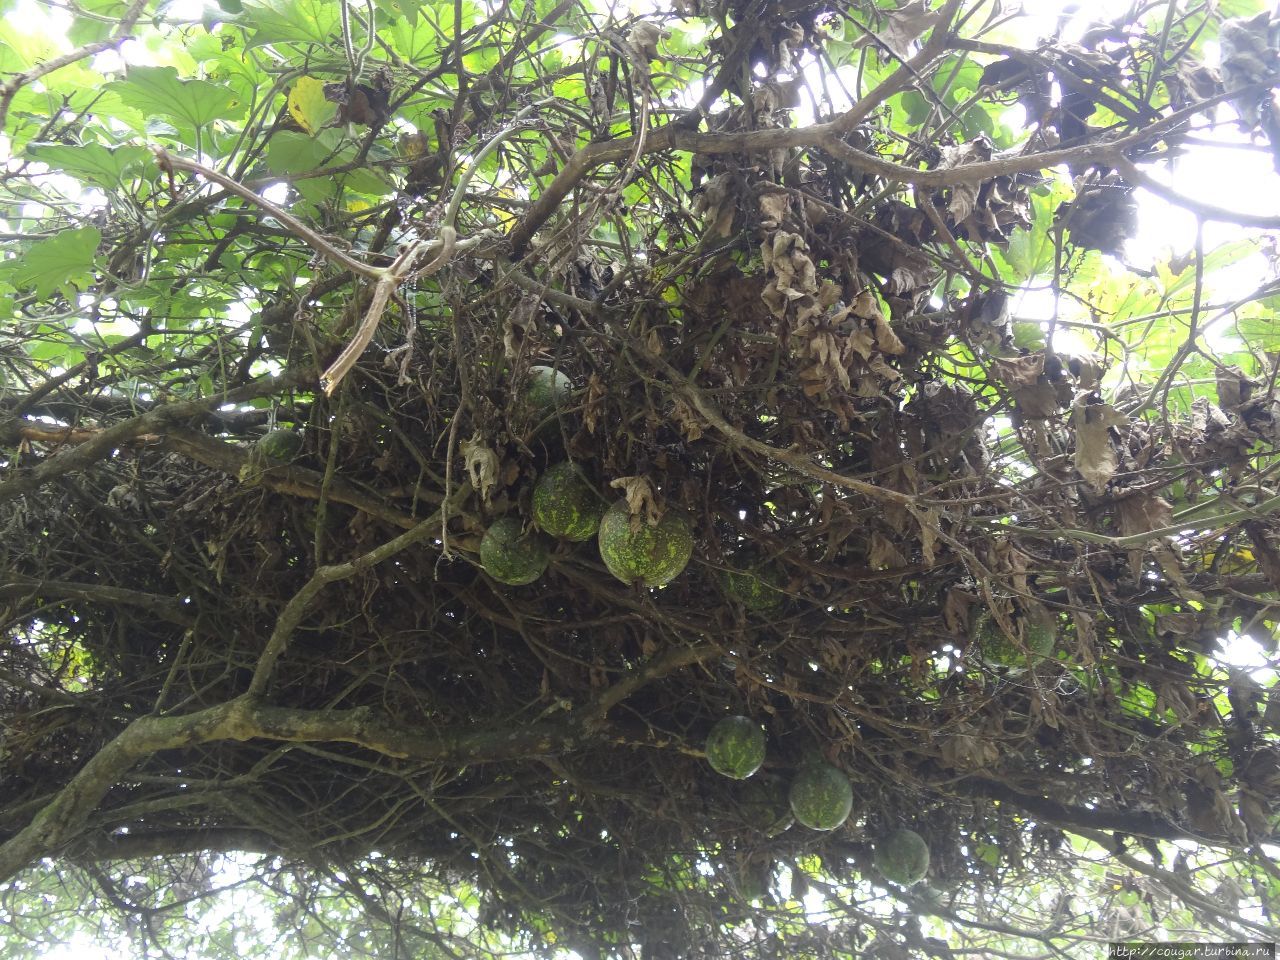 Дикие арбузы над тропой, несьедобные  из-за горечи. По словам гида, местные используют их для лечения кур от птичьего гриппа. Моши, Танзания